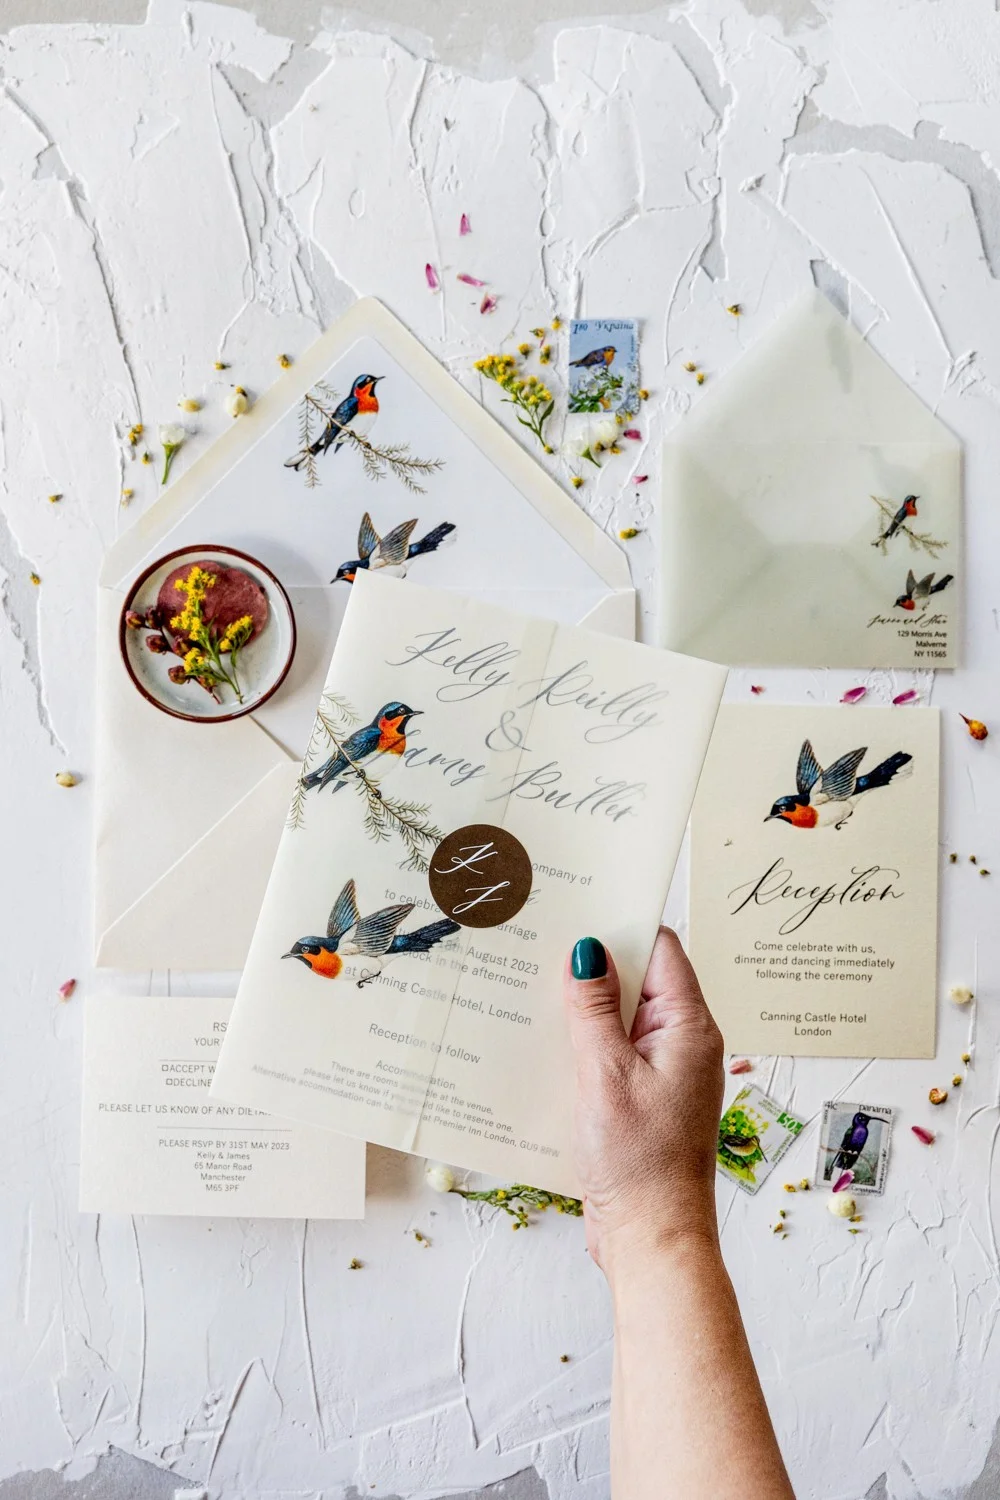 Vintage Hochzeit Einladung mit Pergament wickeln, Love Birds Hochzeitseinladung, Retro Hochzeitseinladung